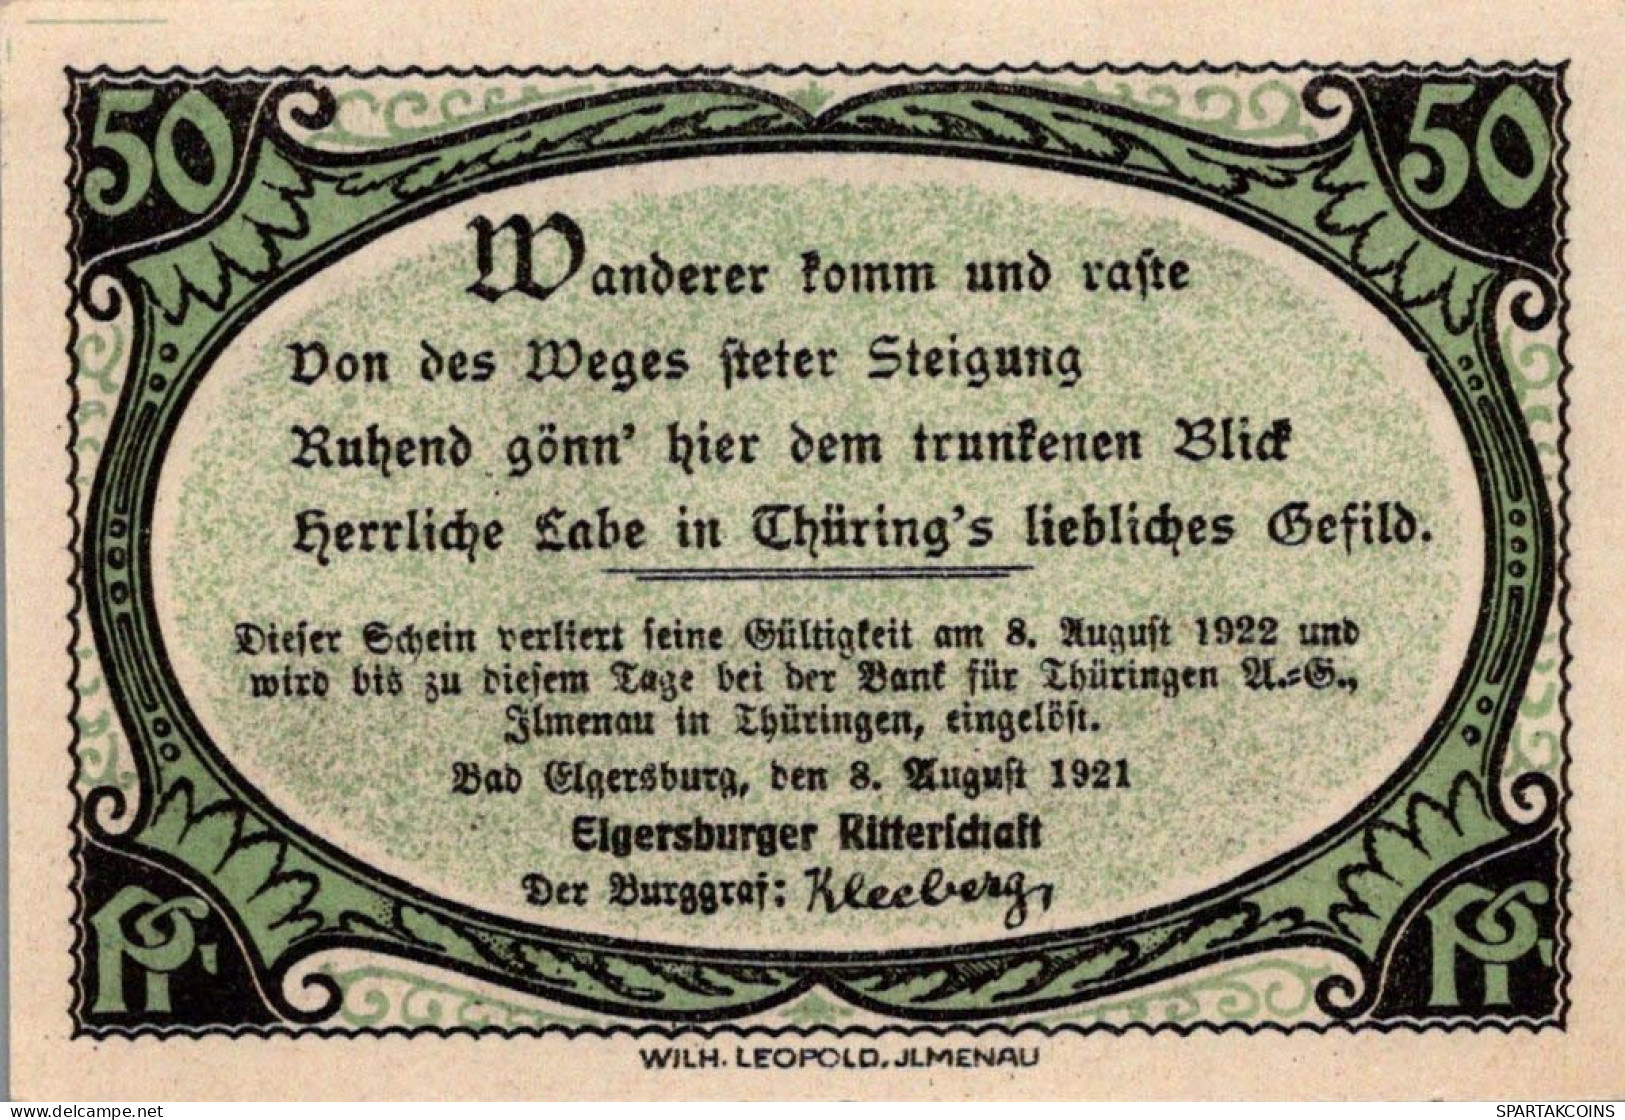 50 PFENNIG 1921 Stadt ELGERSBURG Thuringia UNC DEUTSCHLAND Notgeld #PB171 - [11] Emissions Locales